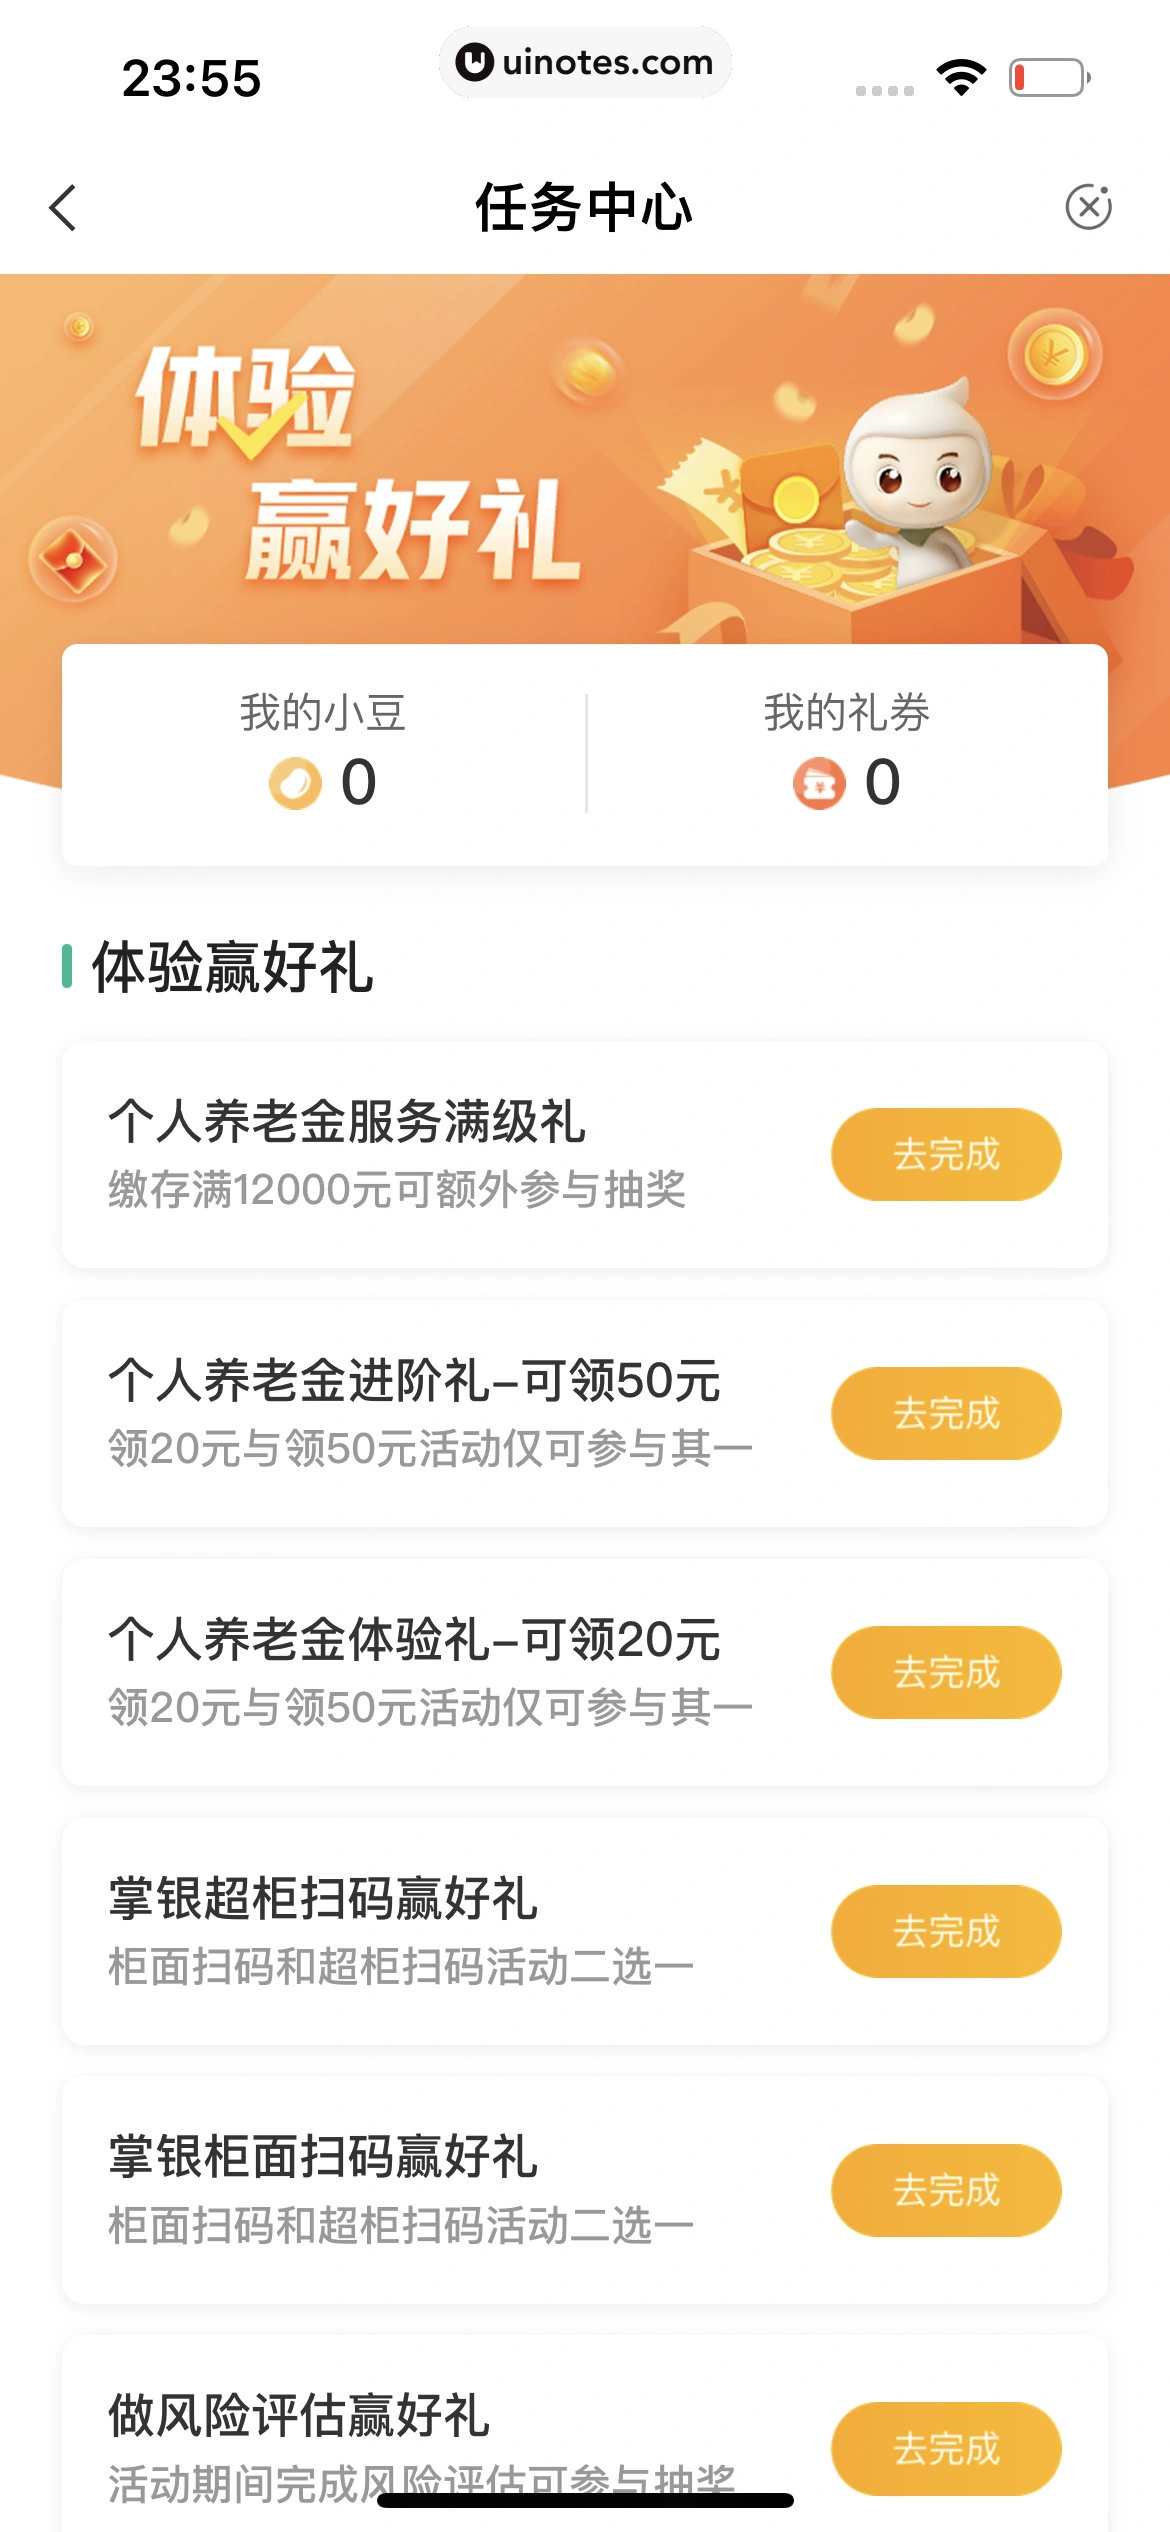 中国农业银行 App 截图 225 - UI Notes